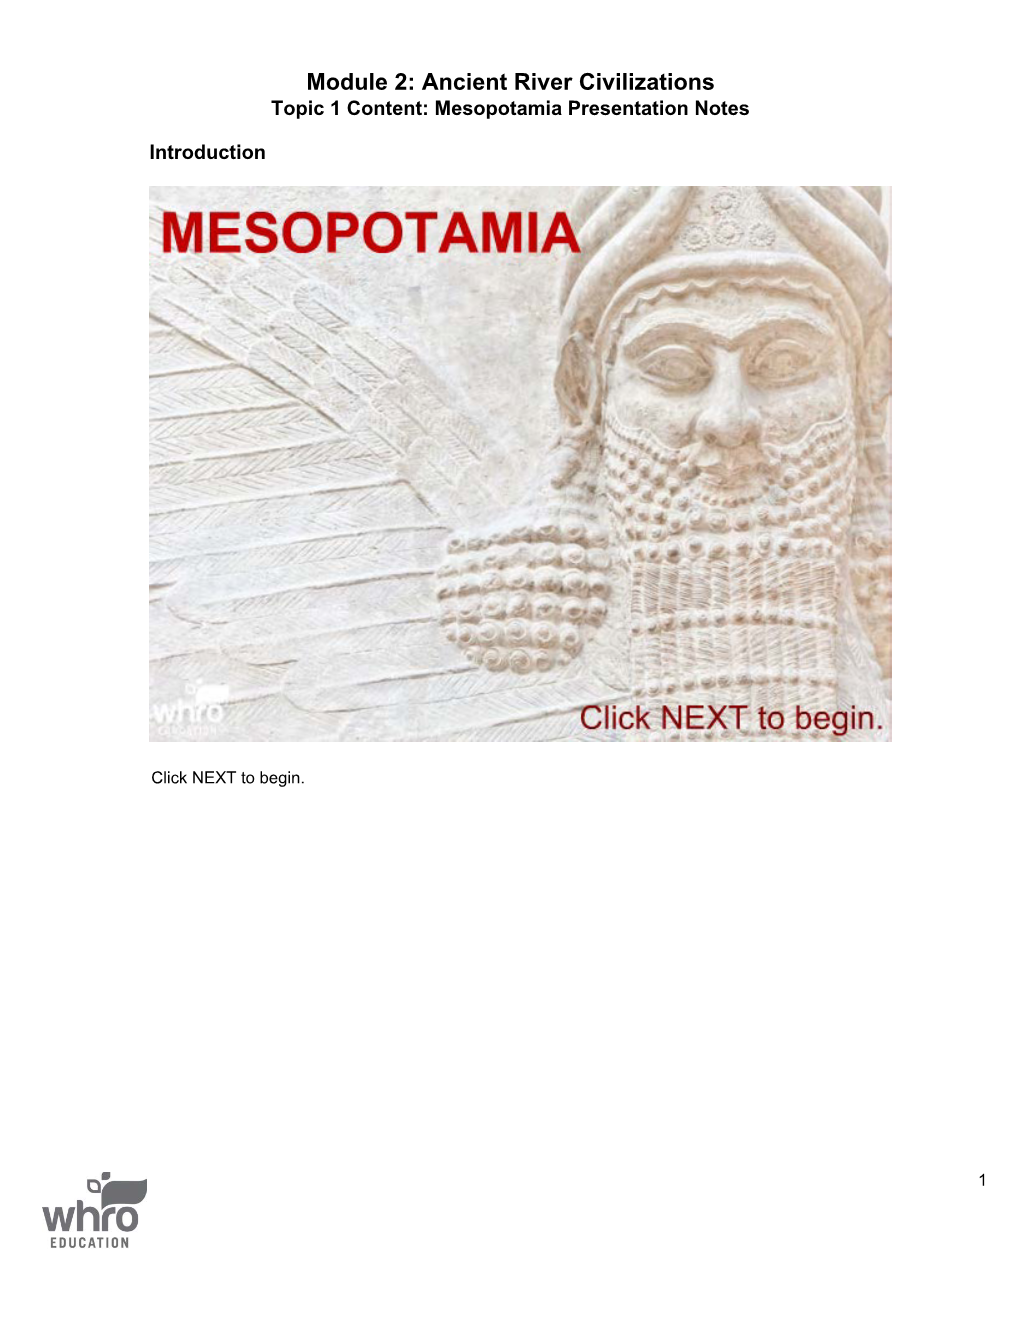 Notes: Mesopotamia